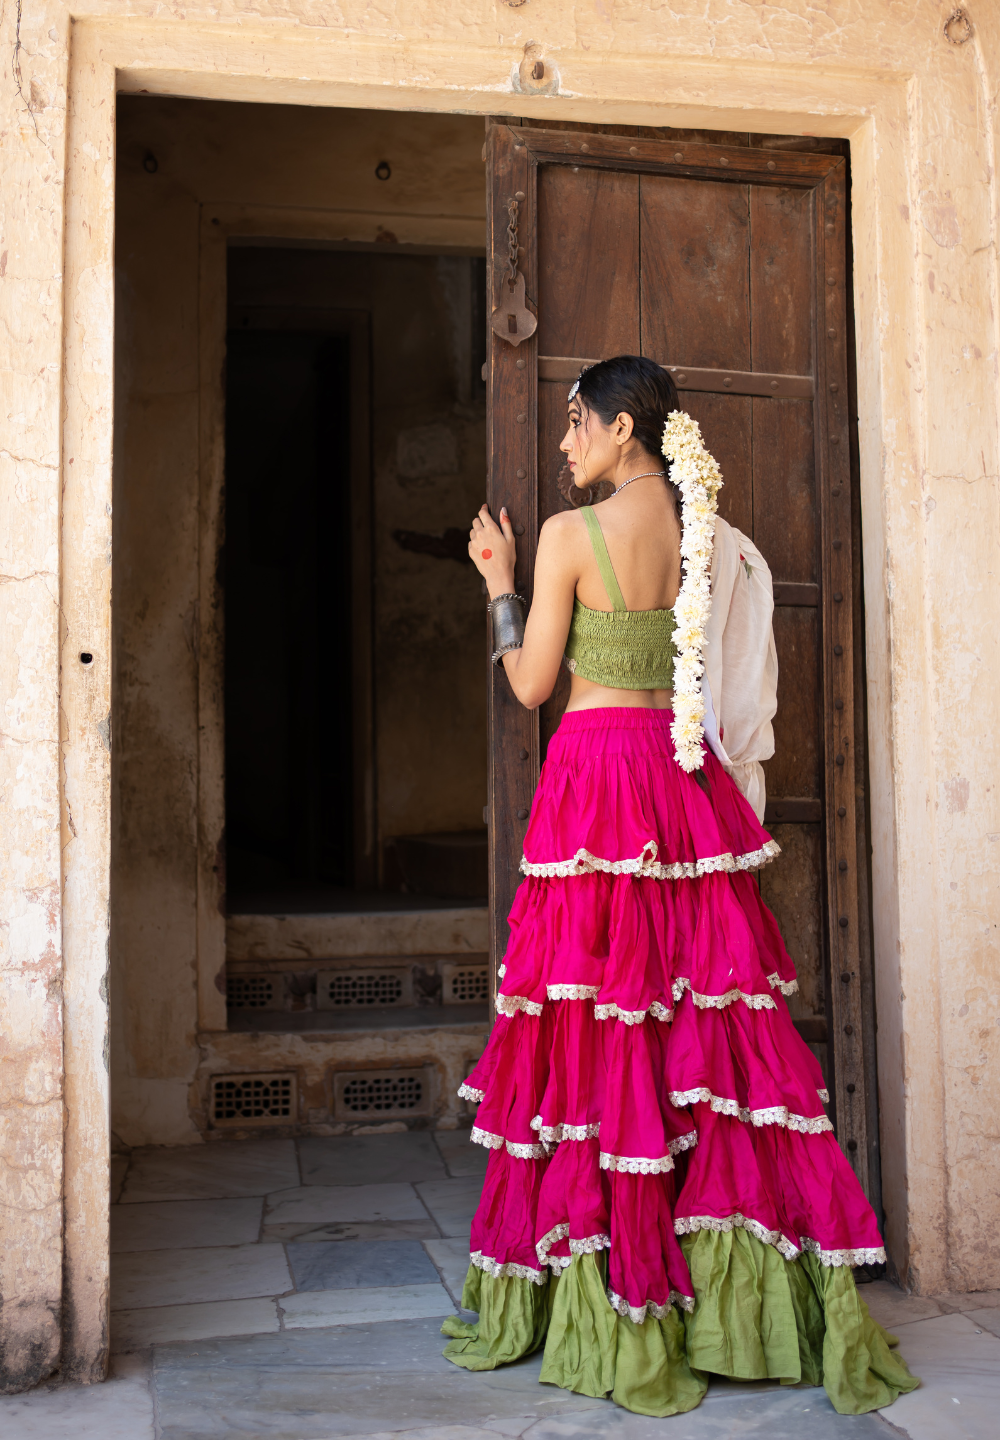 Beautiful Chanderi Silk Lehenga-Choli. | Lehenga blouse designs, Long dress  design, Designer dresses indian